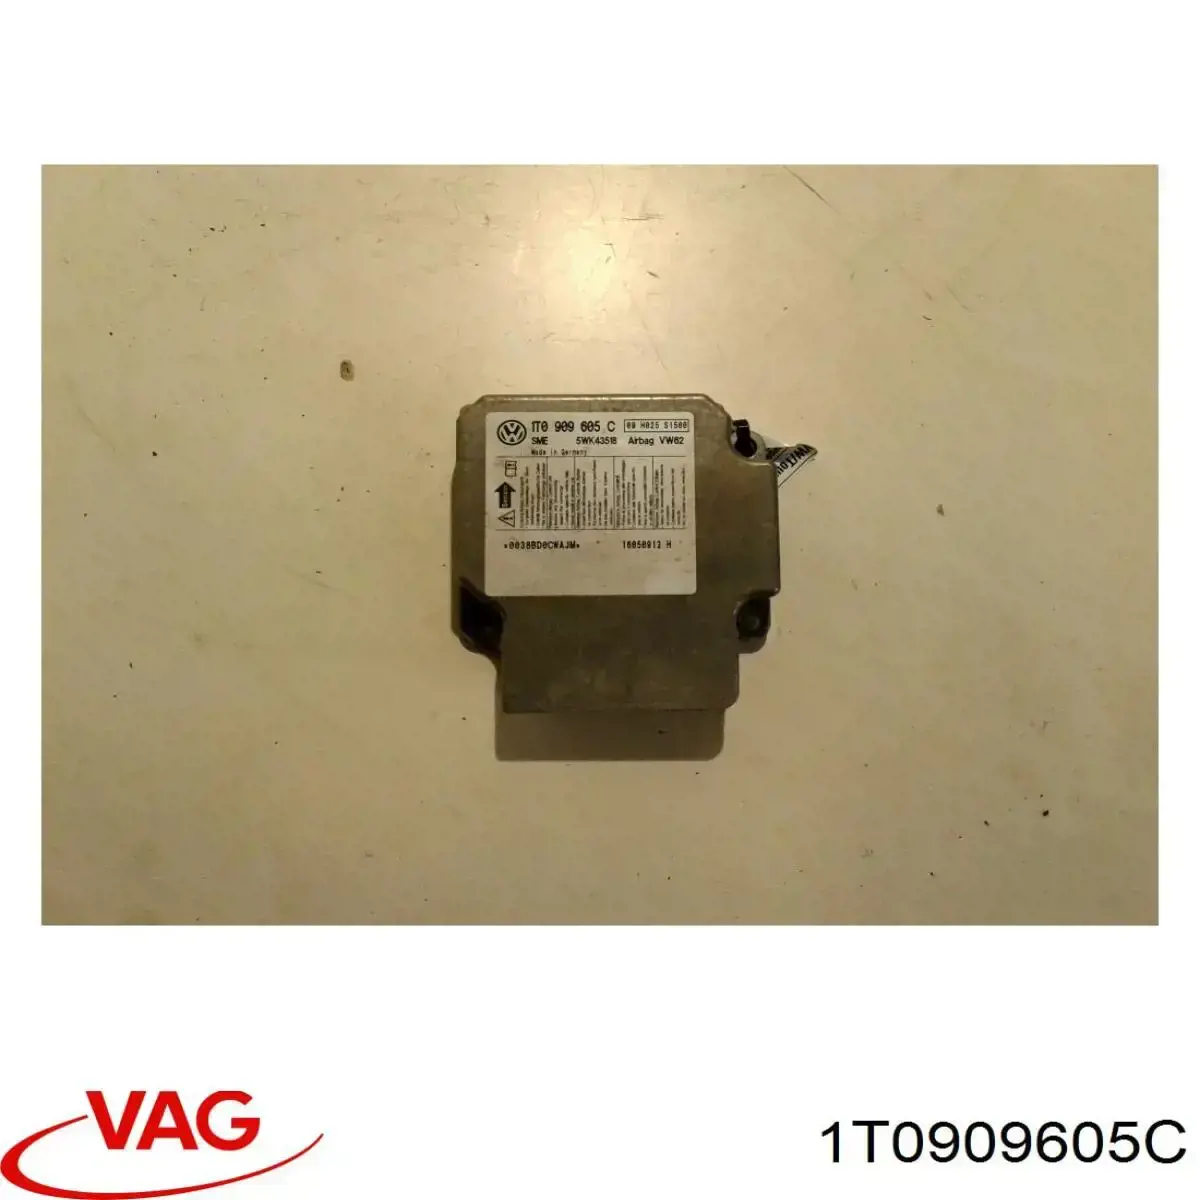 1T0909605C VAG procesador del modulo de control de airbag